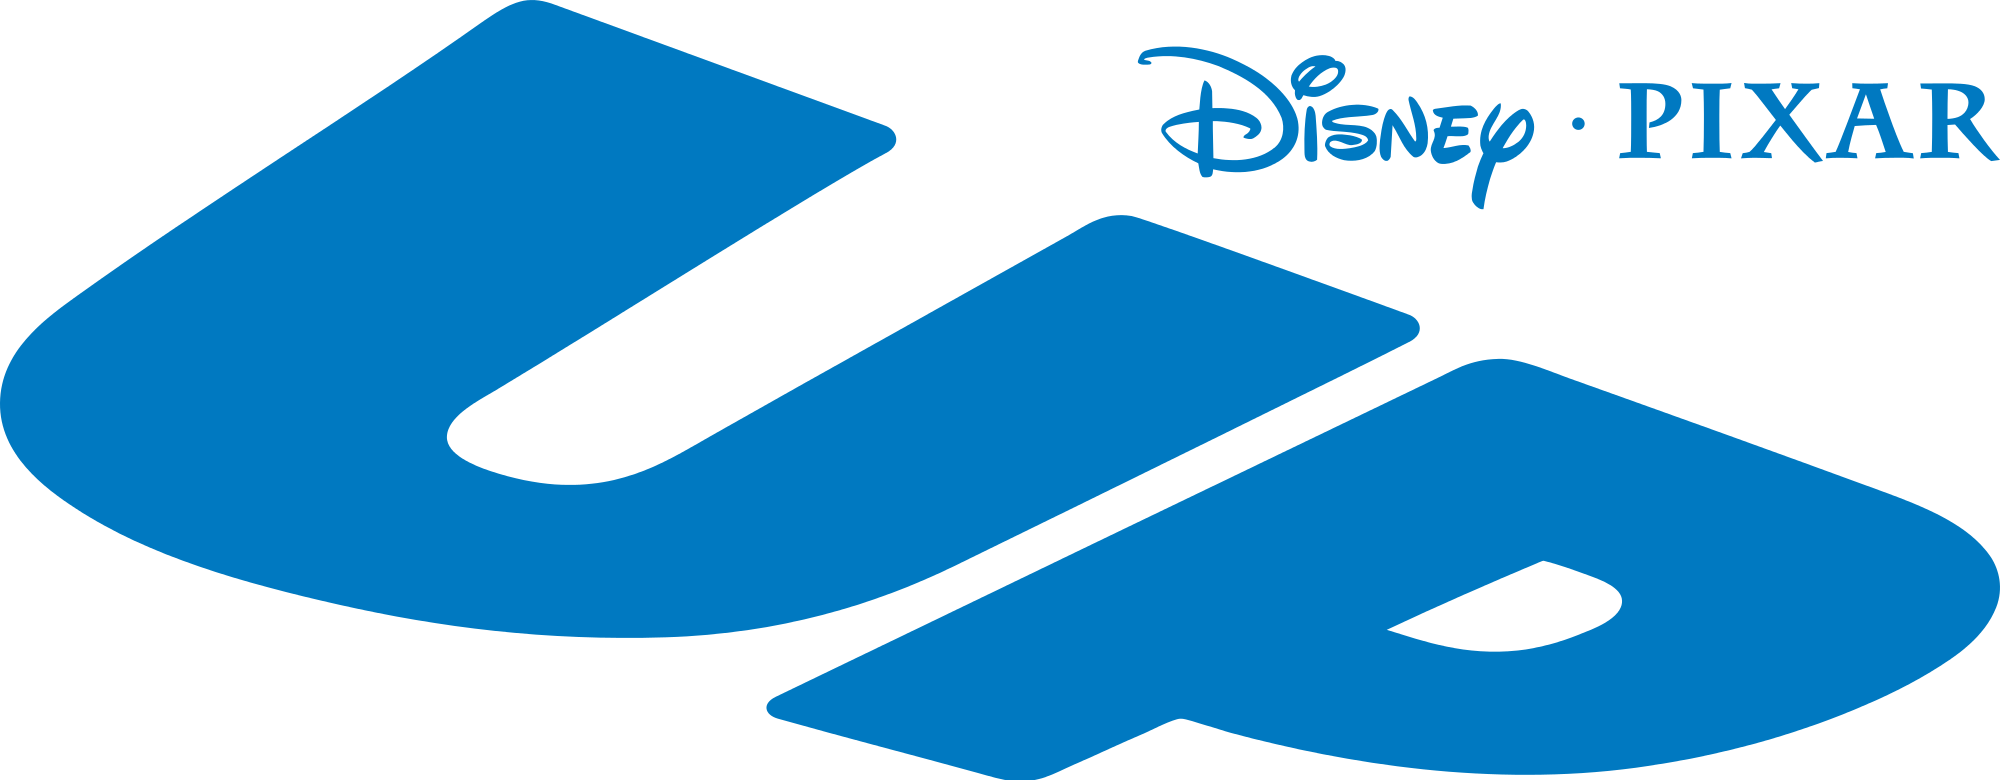 Disney Pixar Up Logo - Up (film) | Logopedia | FANDOM powered by Wikia